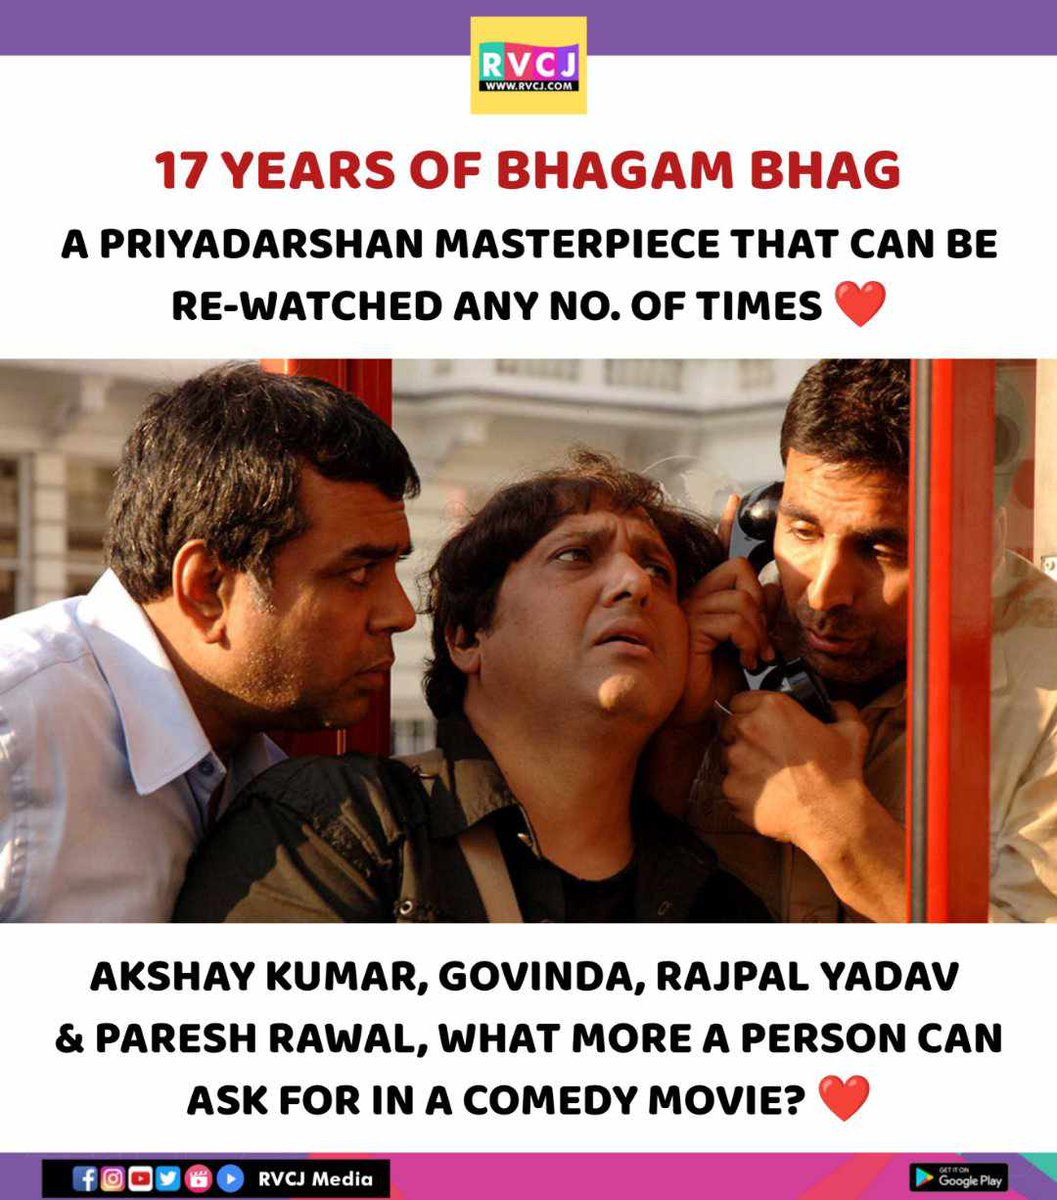 17 years of Bhagam Bhag

#priyadarshan #bhagambhag #akshaykumar #govinda #pareshrawal #rajpalyadav #rvcjinsta #rvcjmovies @akshaykumar @SirPareshRawal @rajpalofficial